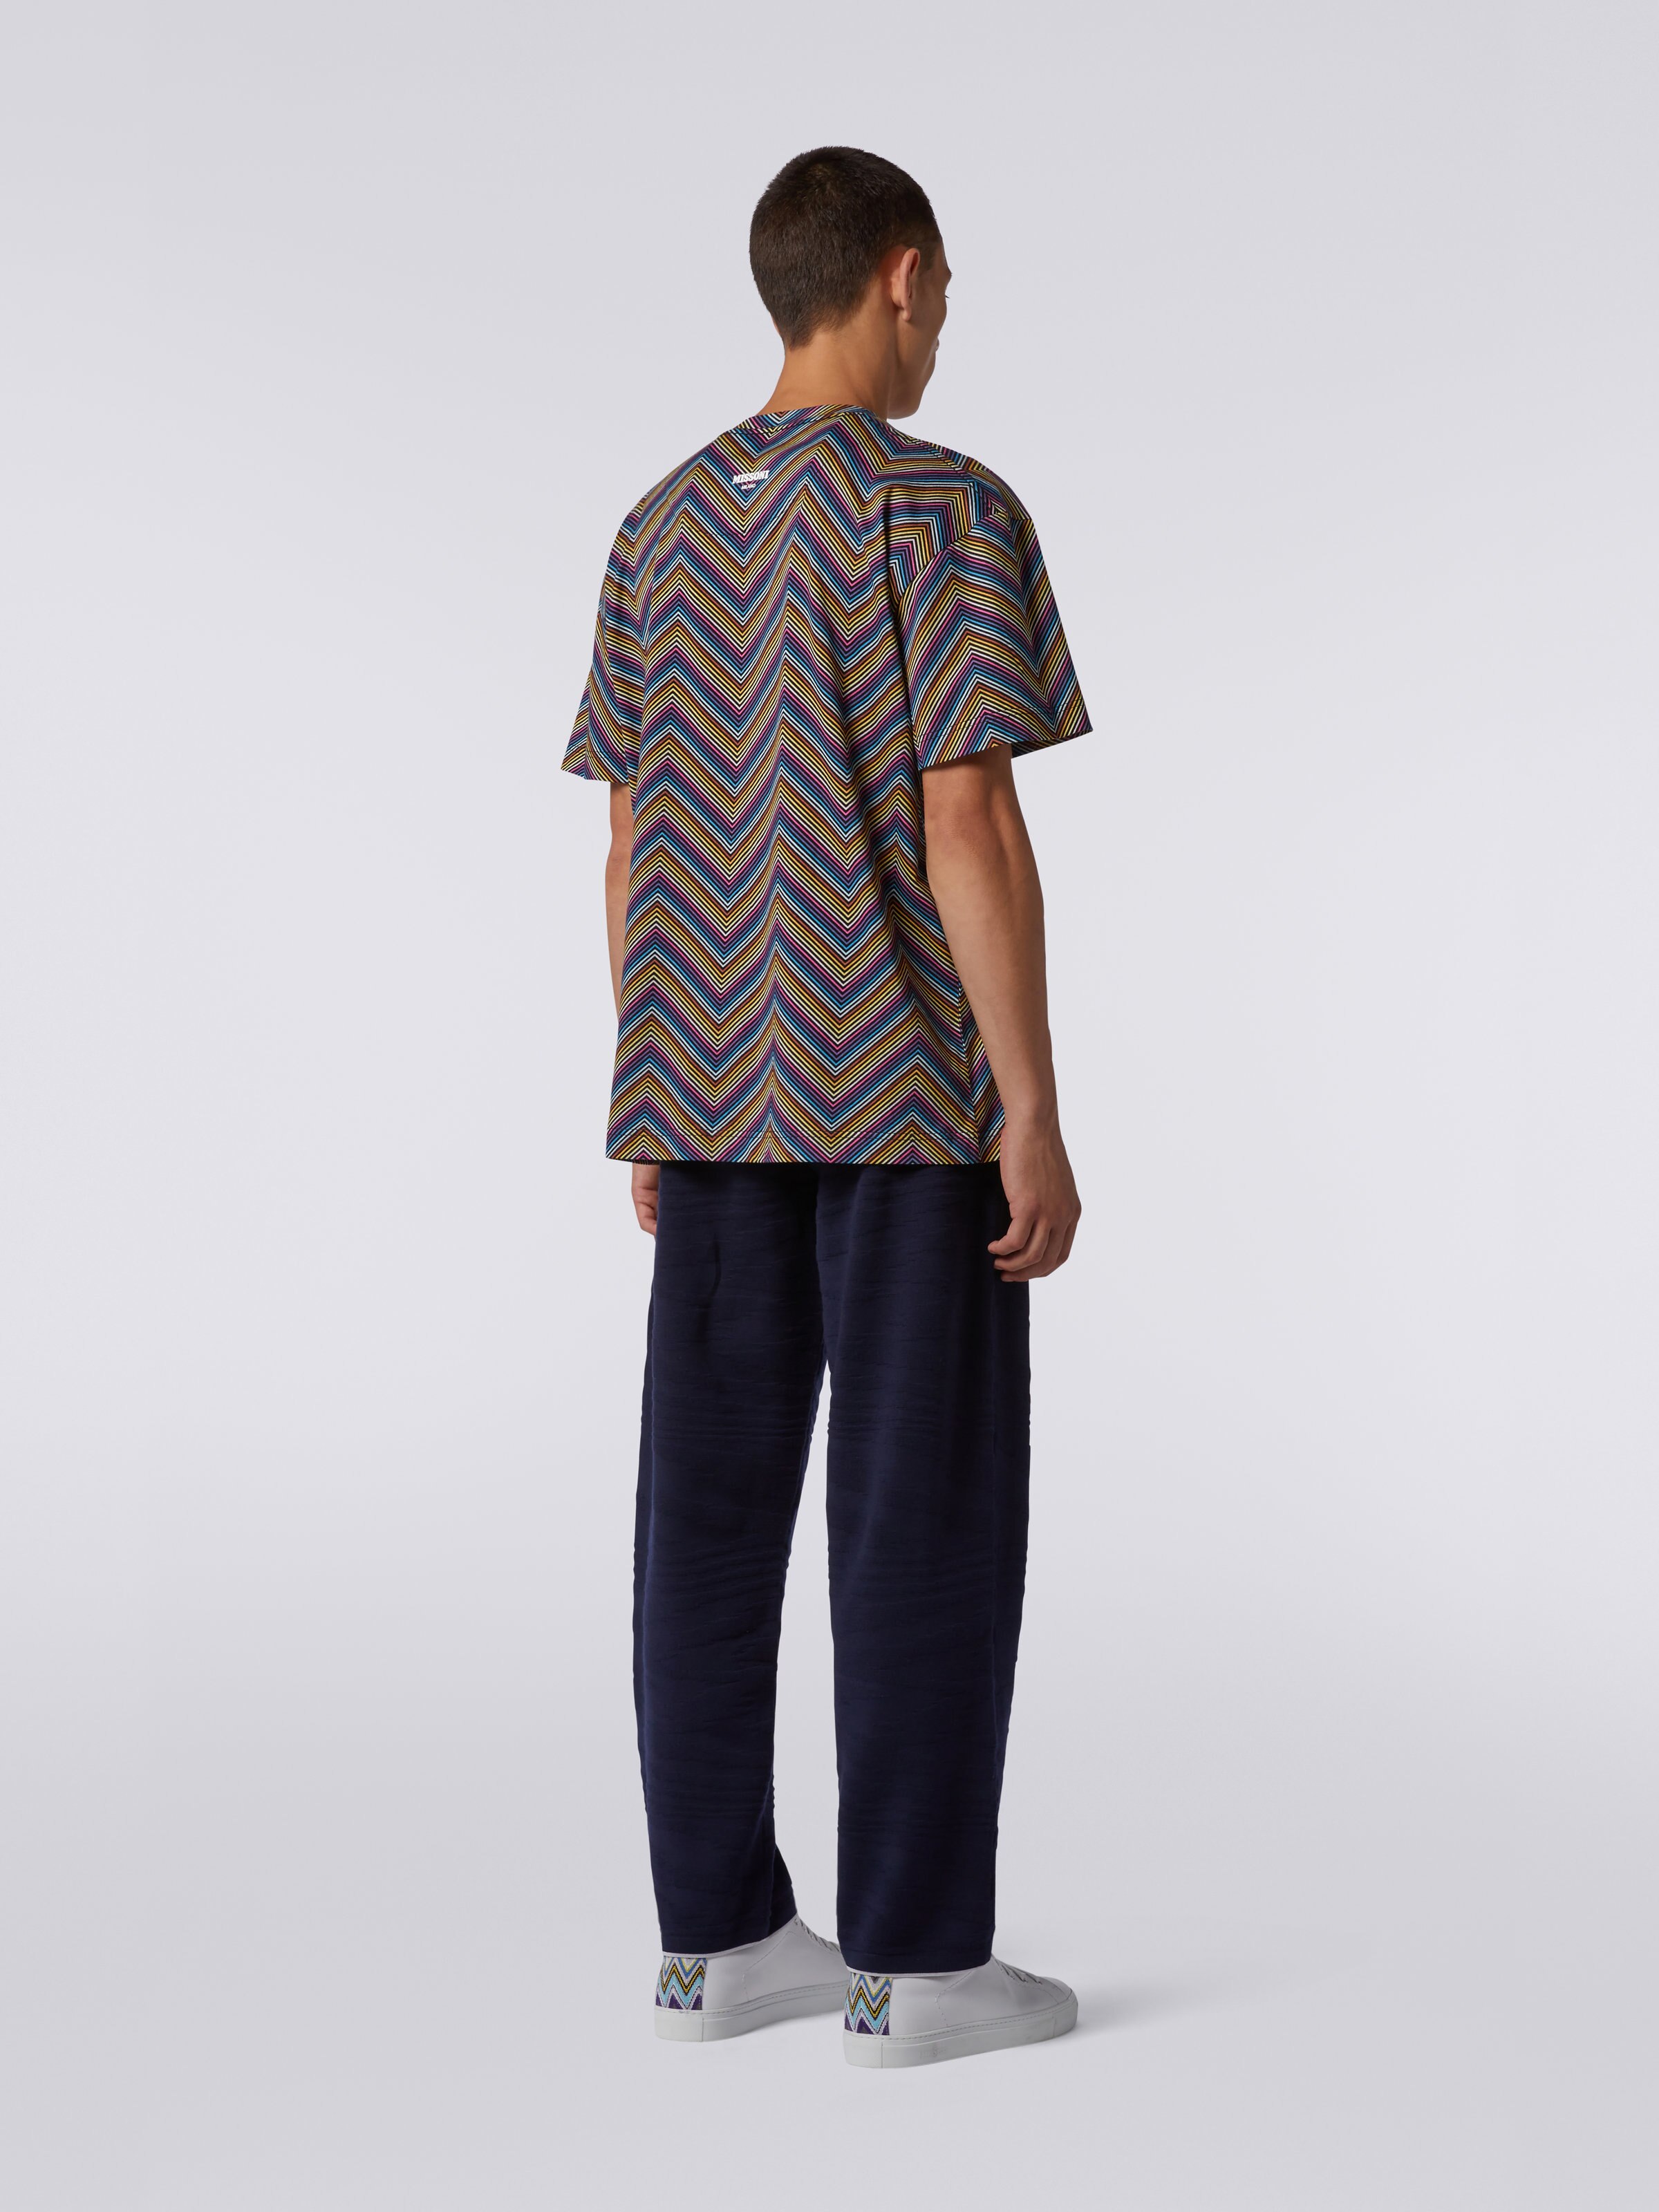 Baumwoll-T-Shirt mit Rundhalsausschnitt und durchgehendem Zickzackmuster, Mehrfarbig  - 3